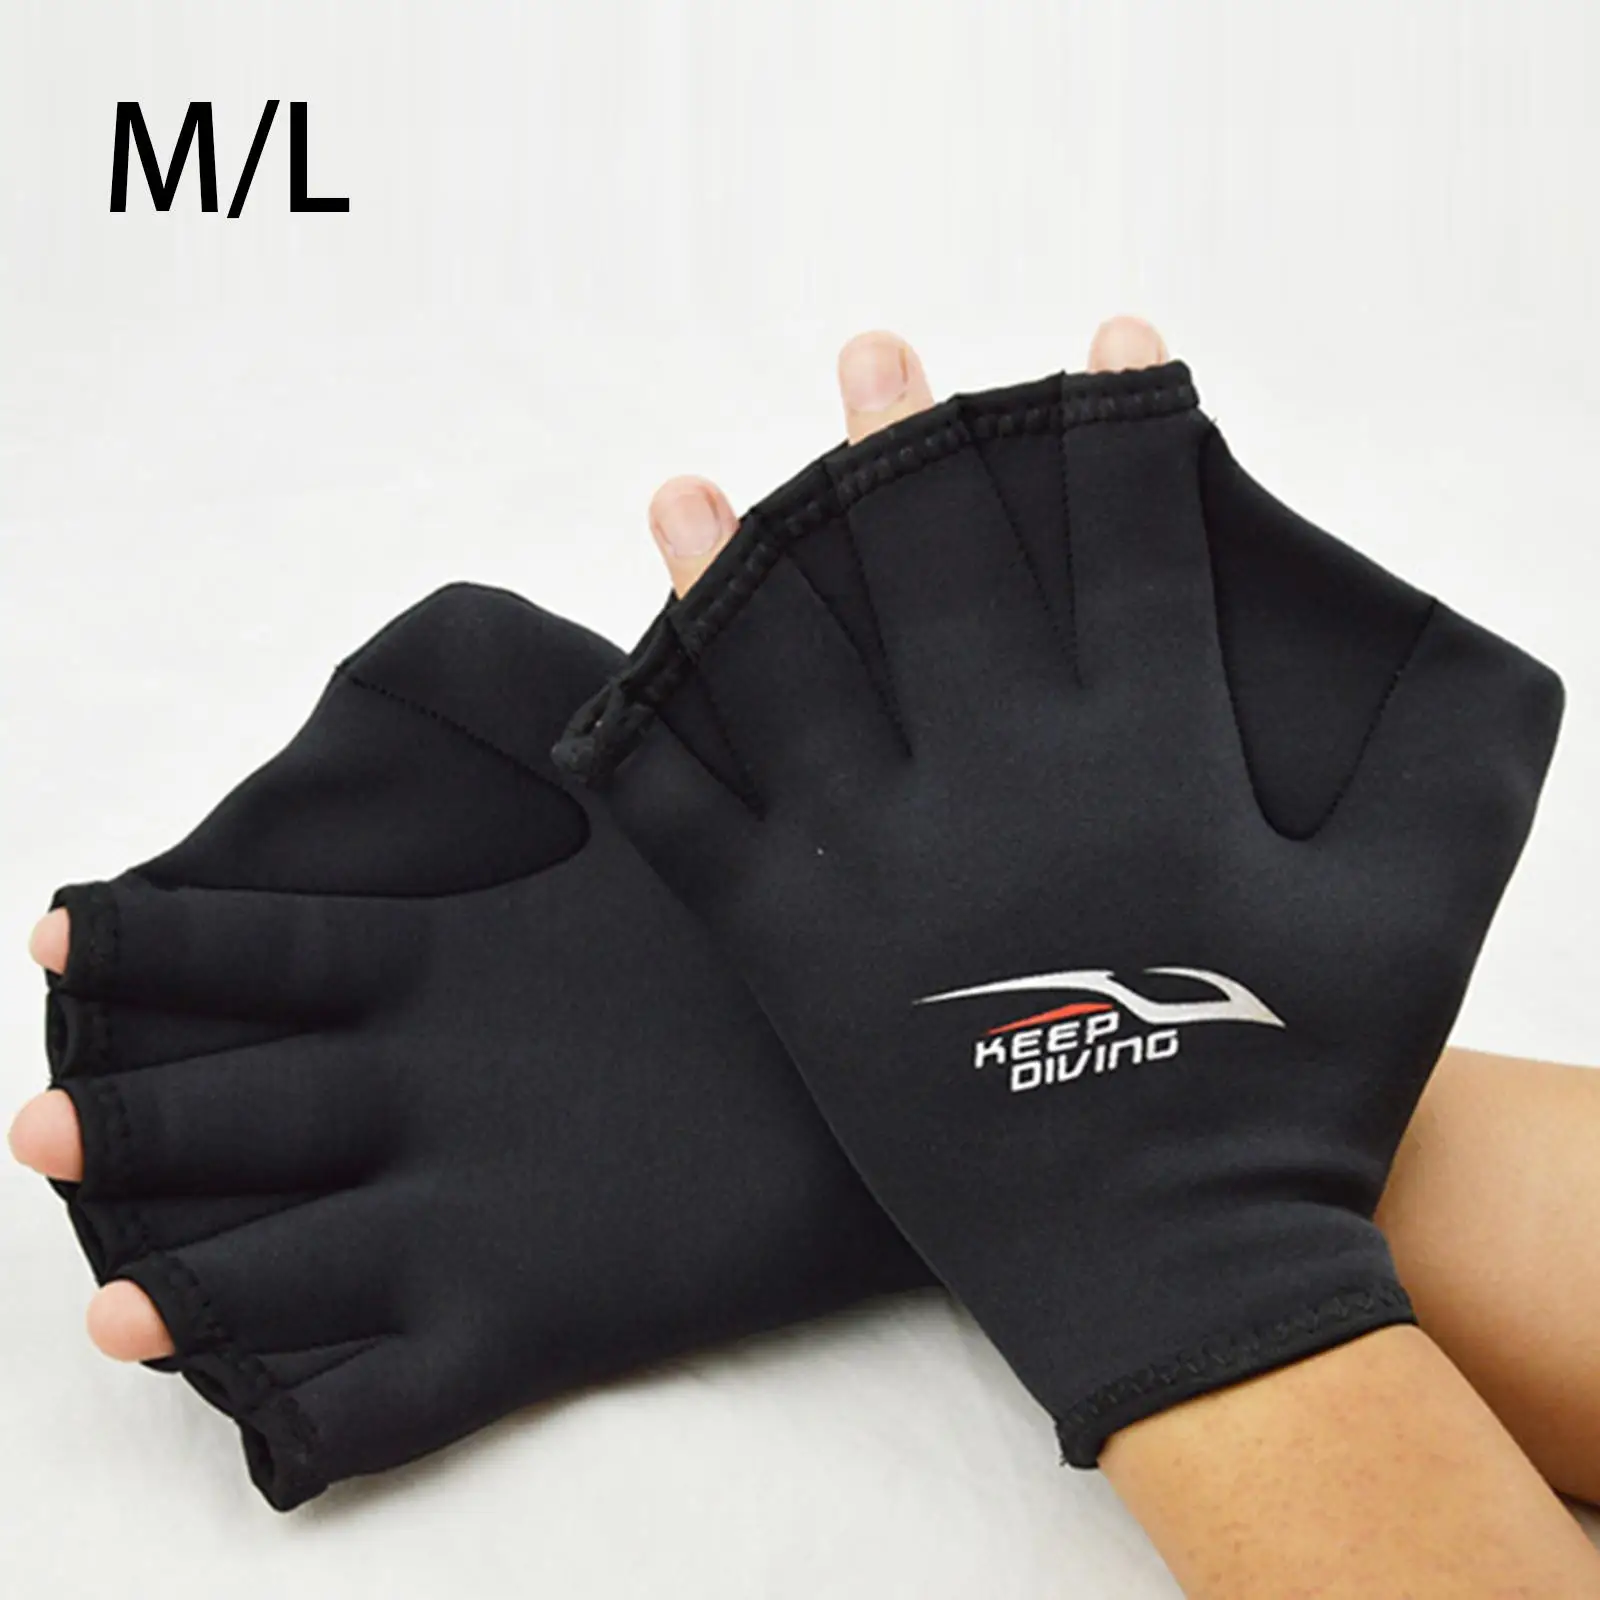 Swimming Gloves, Swim Training Gloves, Neoprene Gloves, Webbed Water Resistant Training Gloves for Swimming Diving